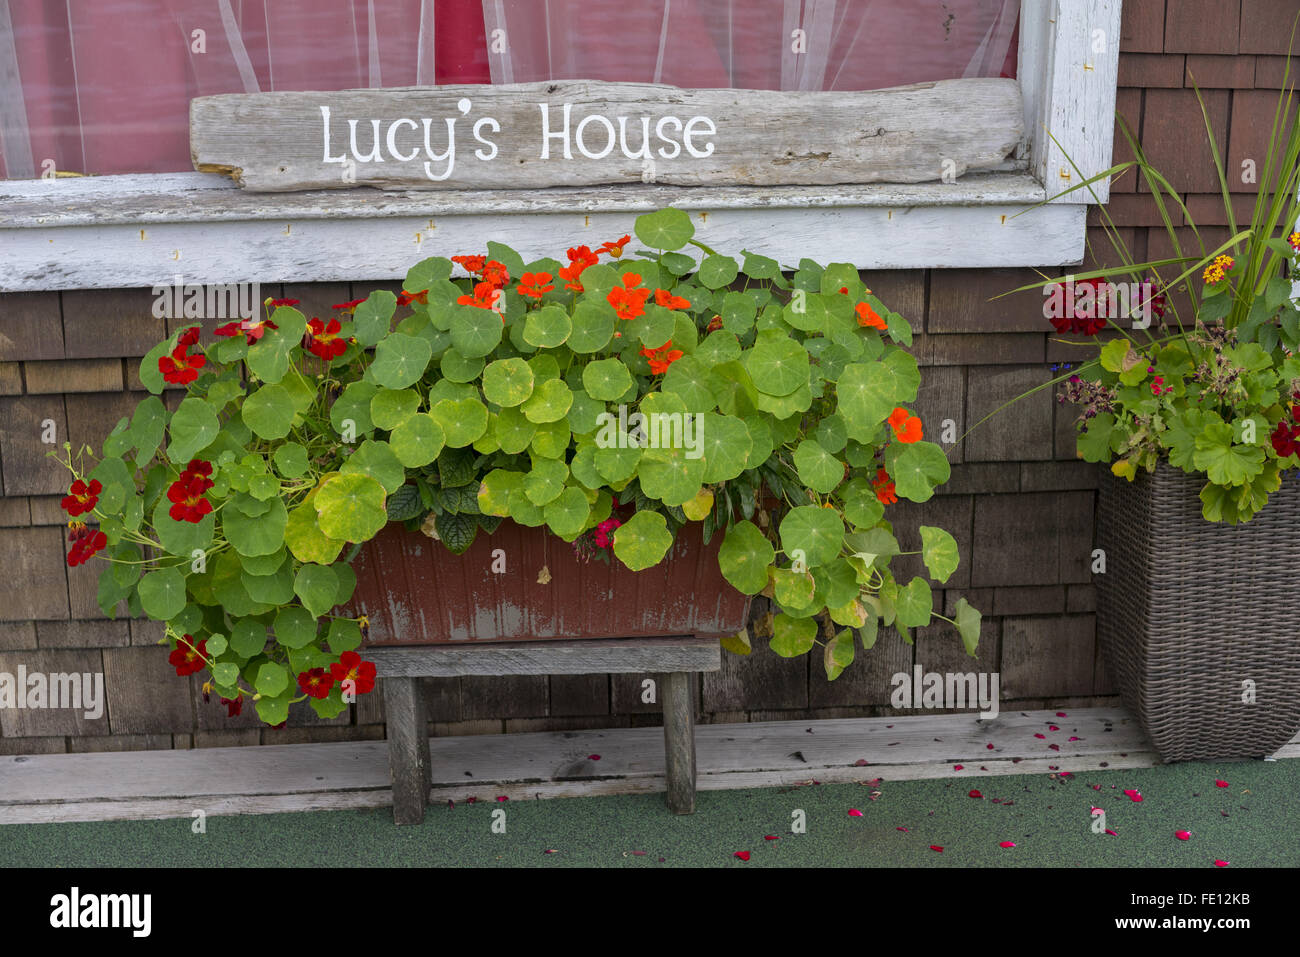 Colombie-britannique, Canada : Refuge Cove dock house détail de fleurs et fenêtre Banque D'Images